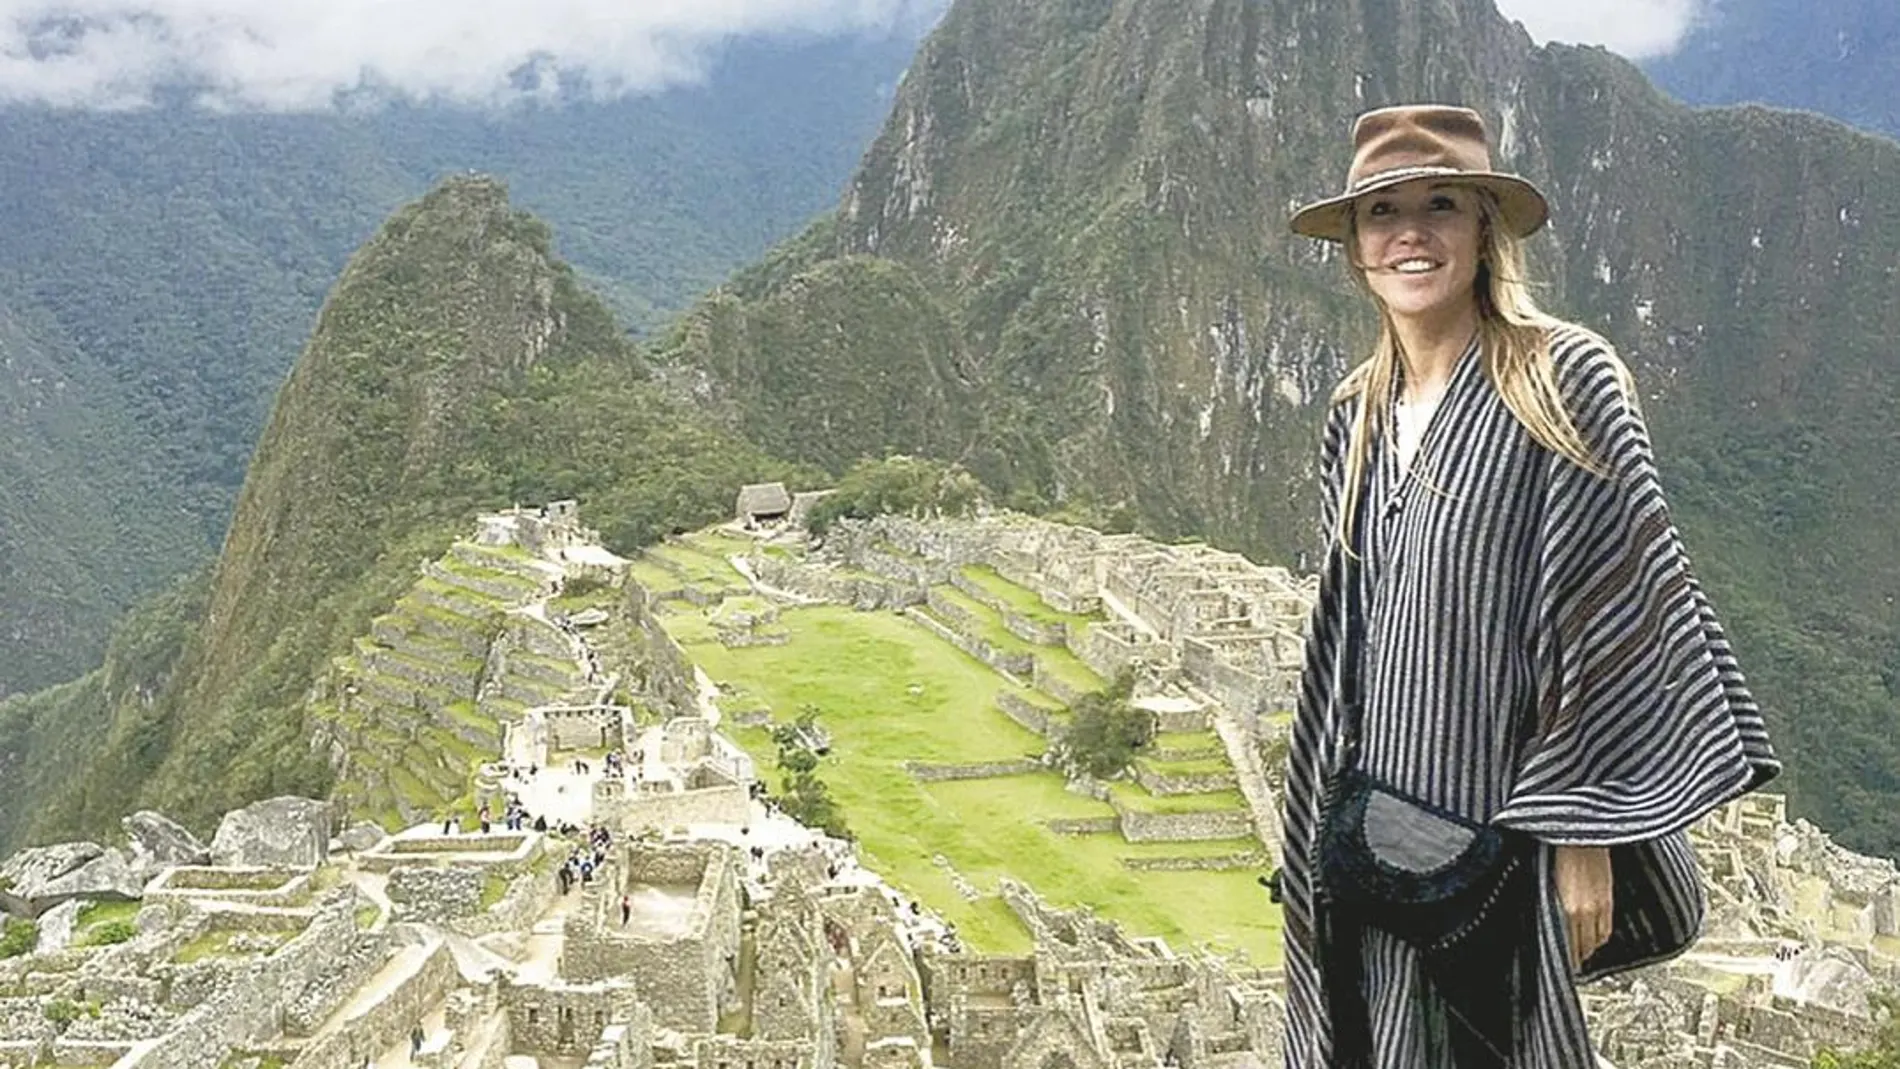 En un viaje a Perú no puede faltar la visita a Machu Picchu, y como se ve en la imagen, ella tampoco lo olvidó